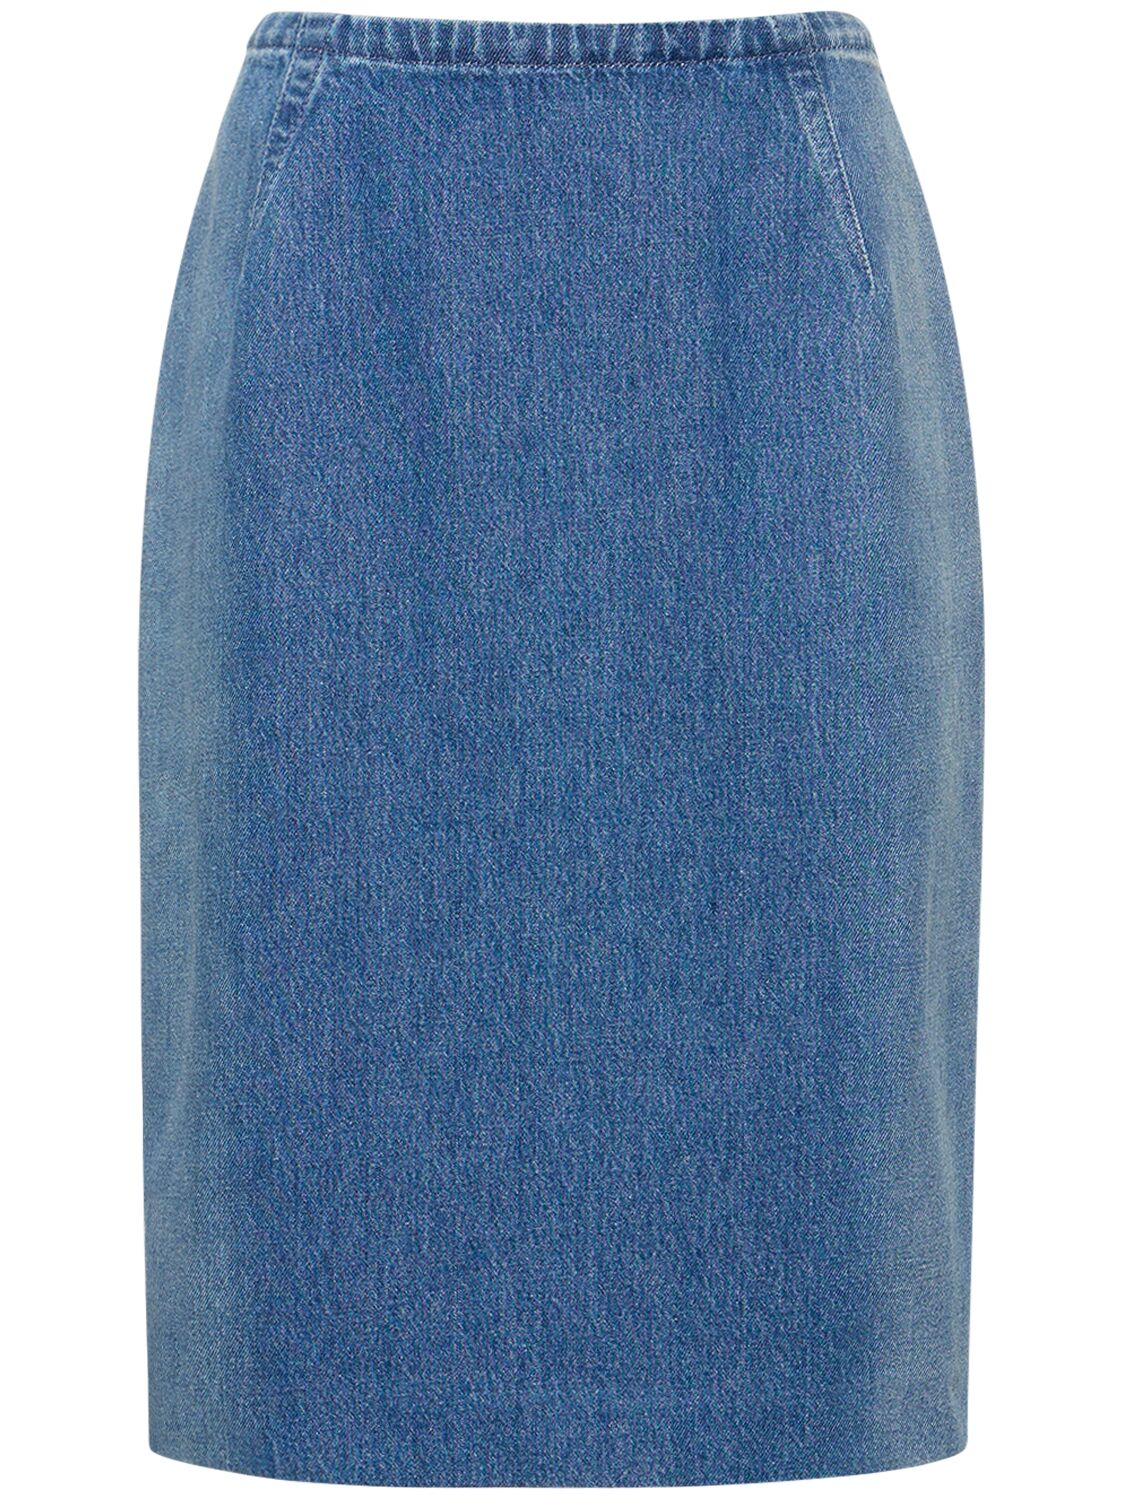 Shop Versace Denim Pencil Skirt W/ Back Slit In Blue